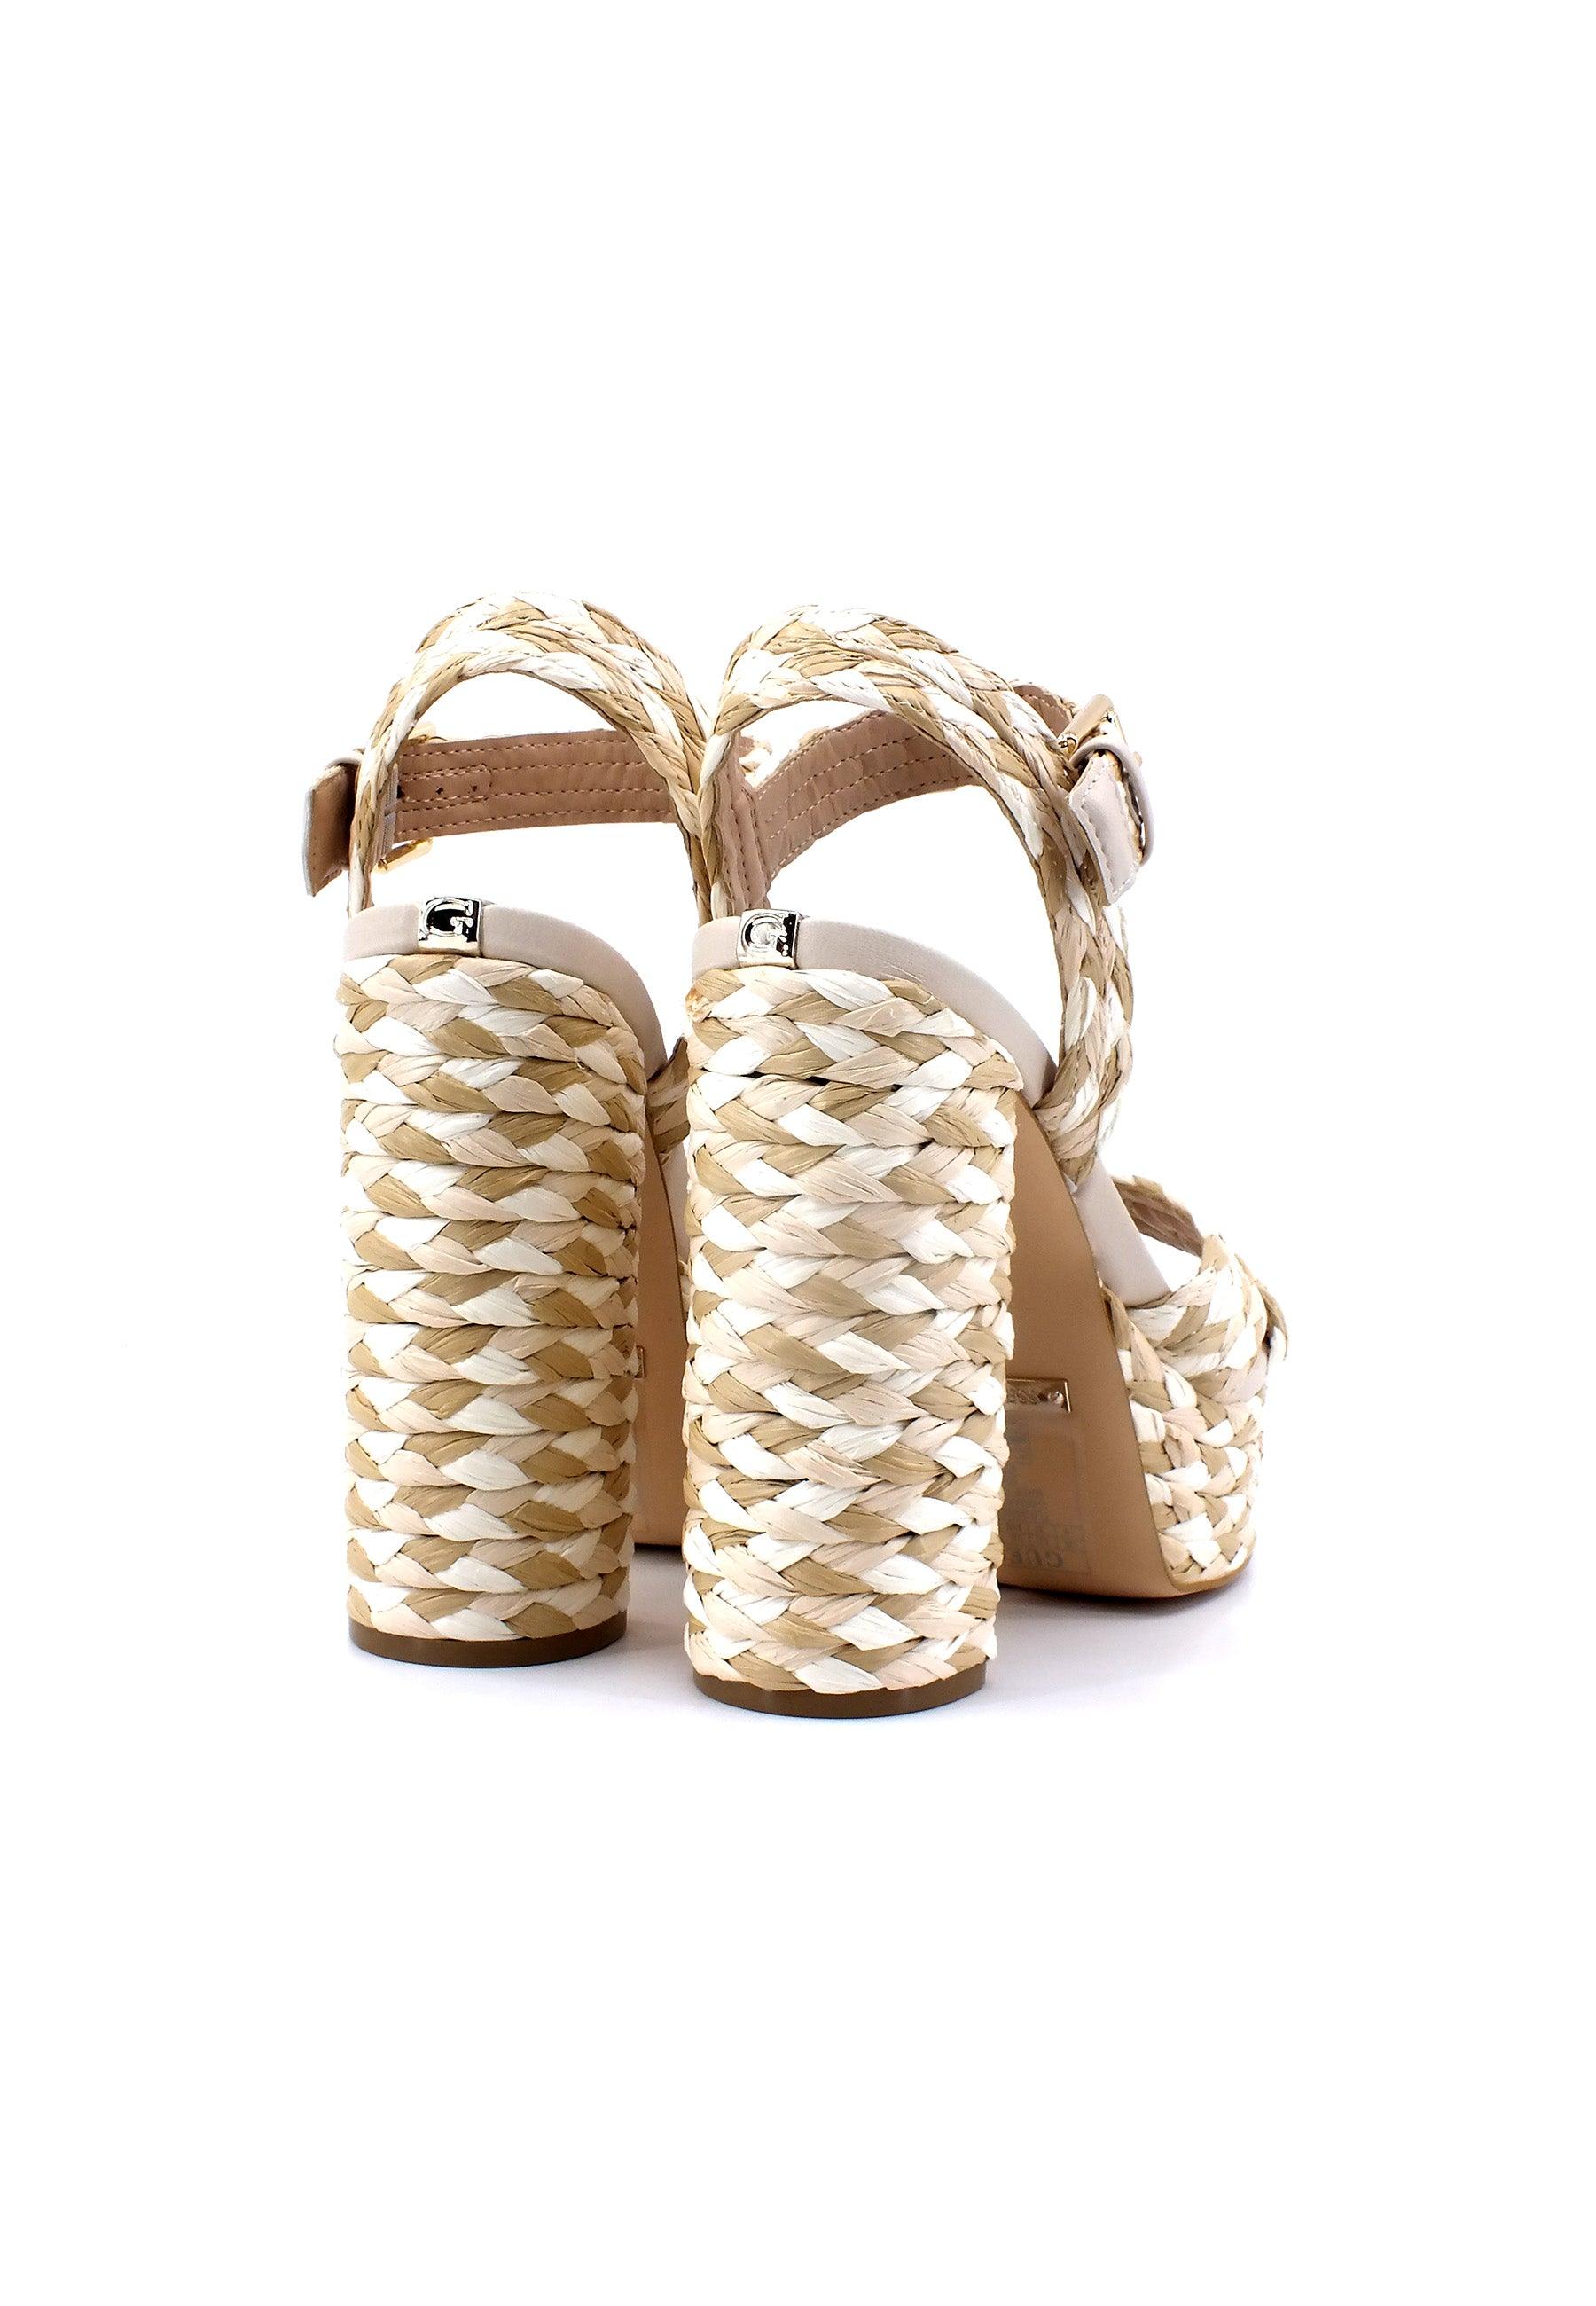 GUESS Sandalo Tacco Alto Intreccio Donna Tan FL6GBNELE03 - Sandrini Calzature e Abbigliamento